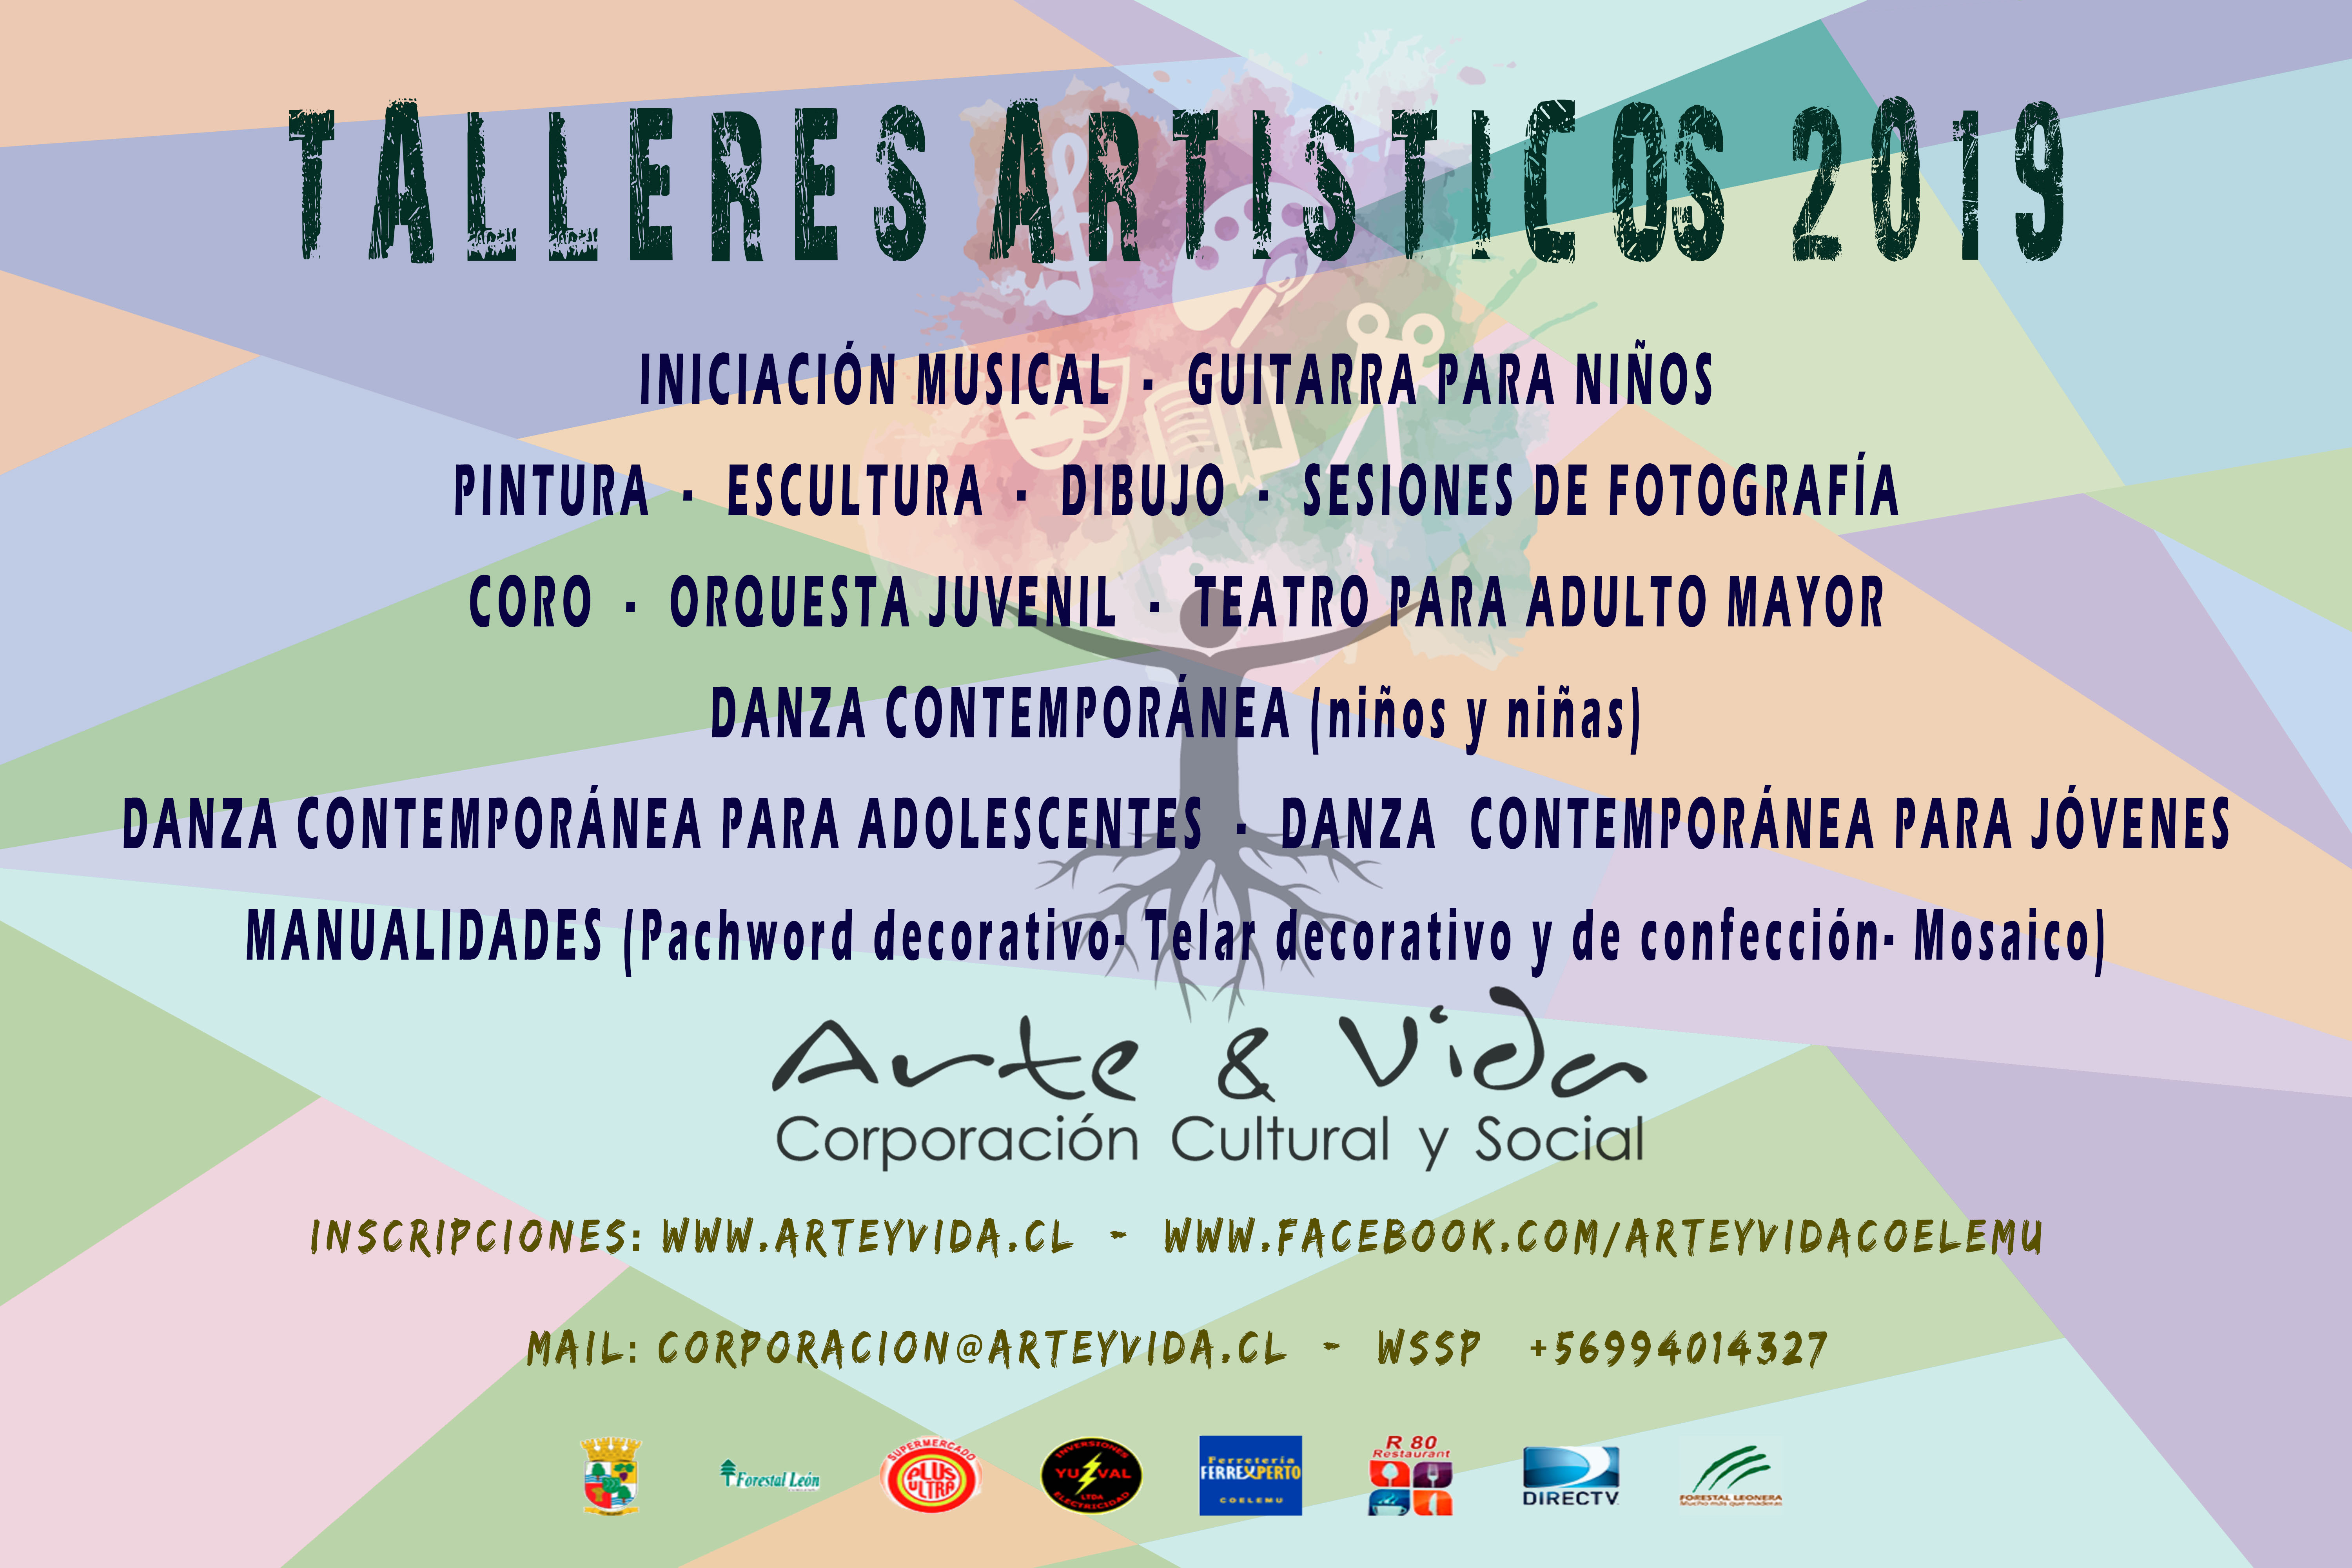 CORPORACIÓN ARTE Y VIDA ABRE INSCRIPCIONES  PARA  TALLERES ARTÍSTICOS 2019 EN COELEMU